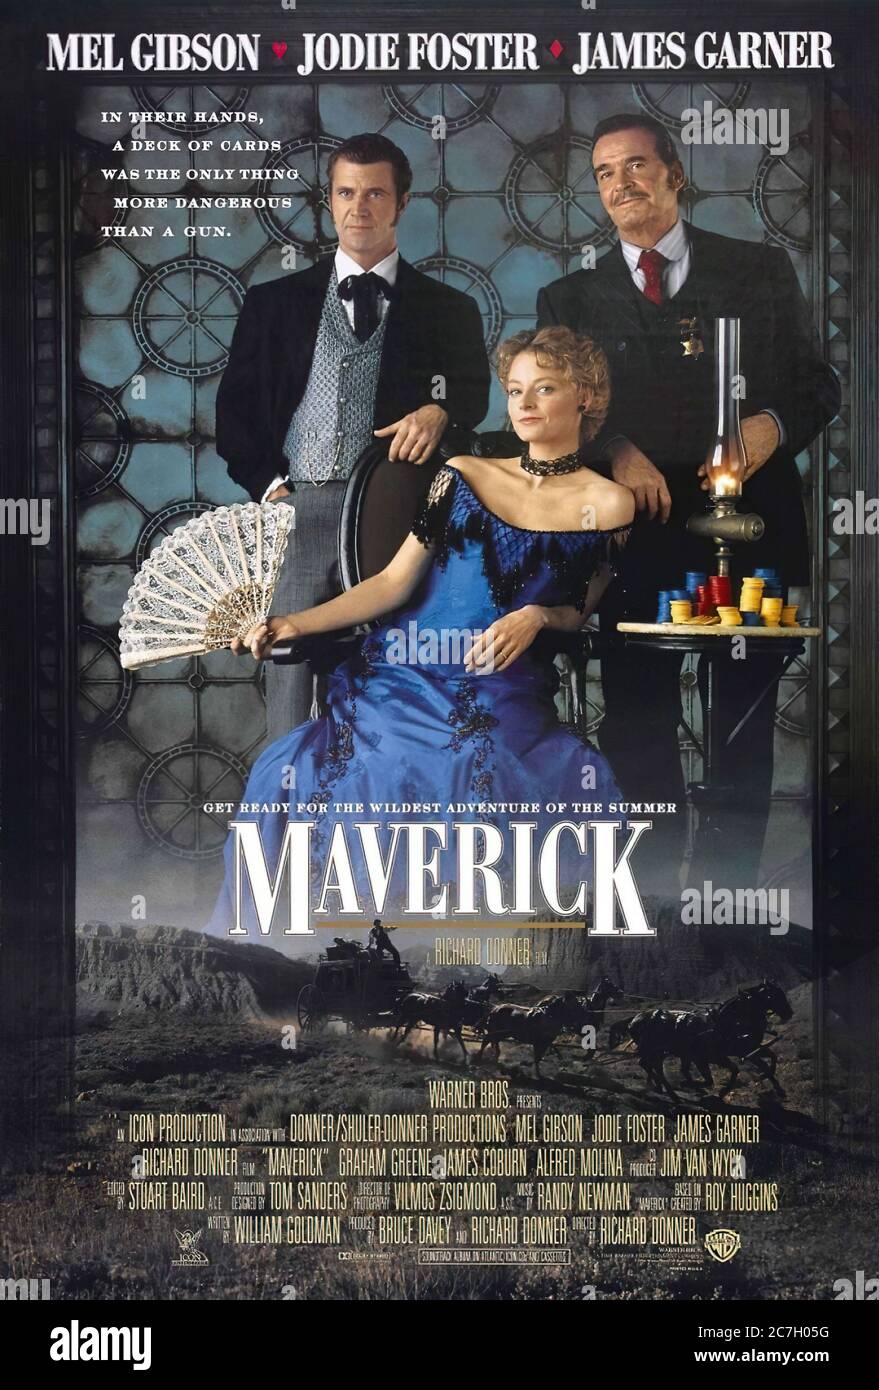 Maverick - Movie Poster Stock Photo